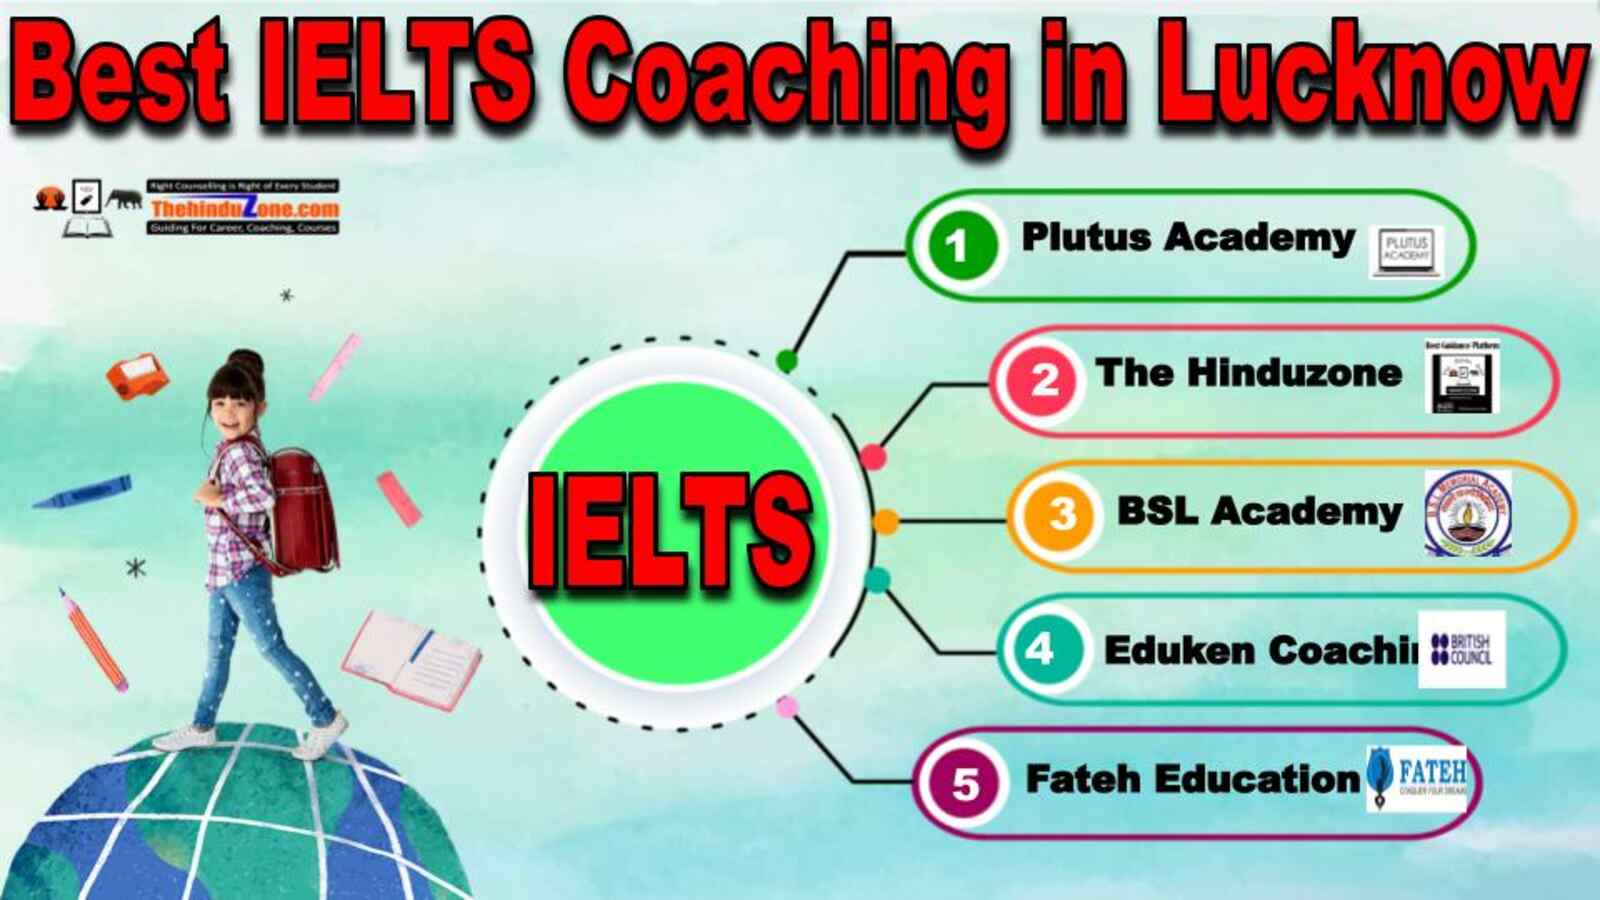 Best IELTS Coaching in Lucknow